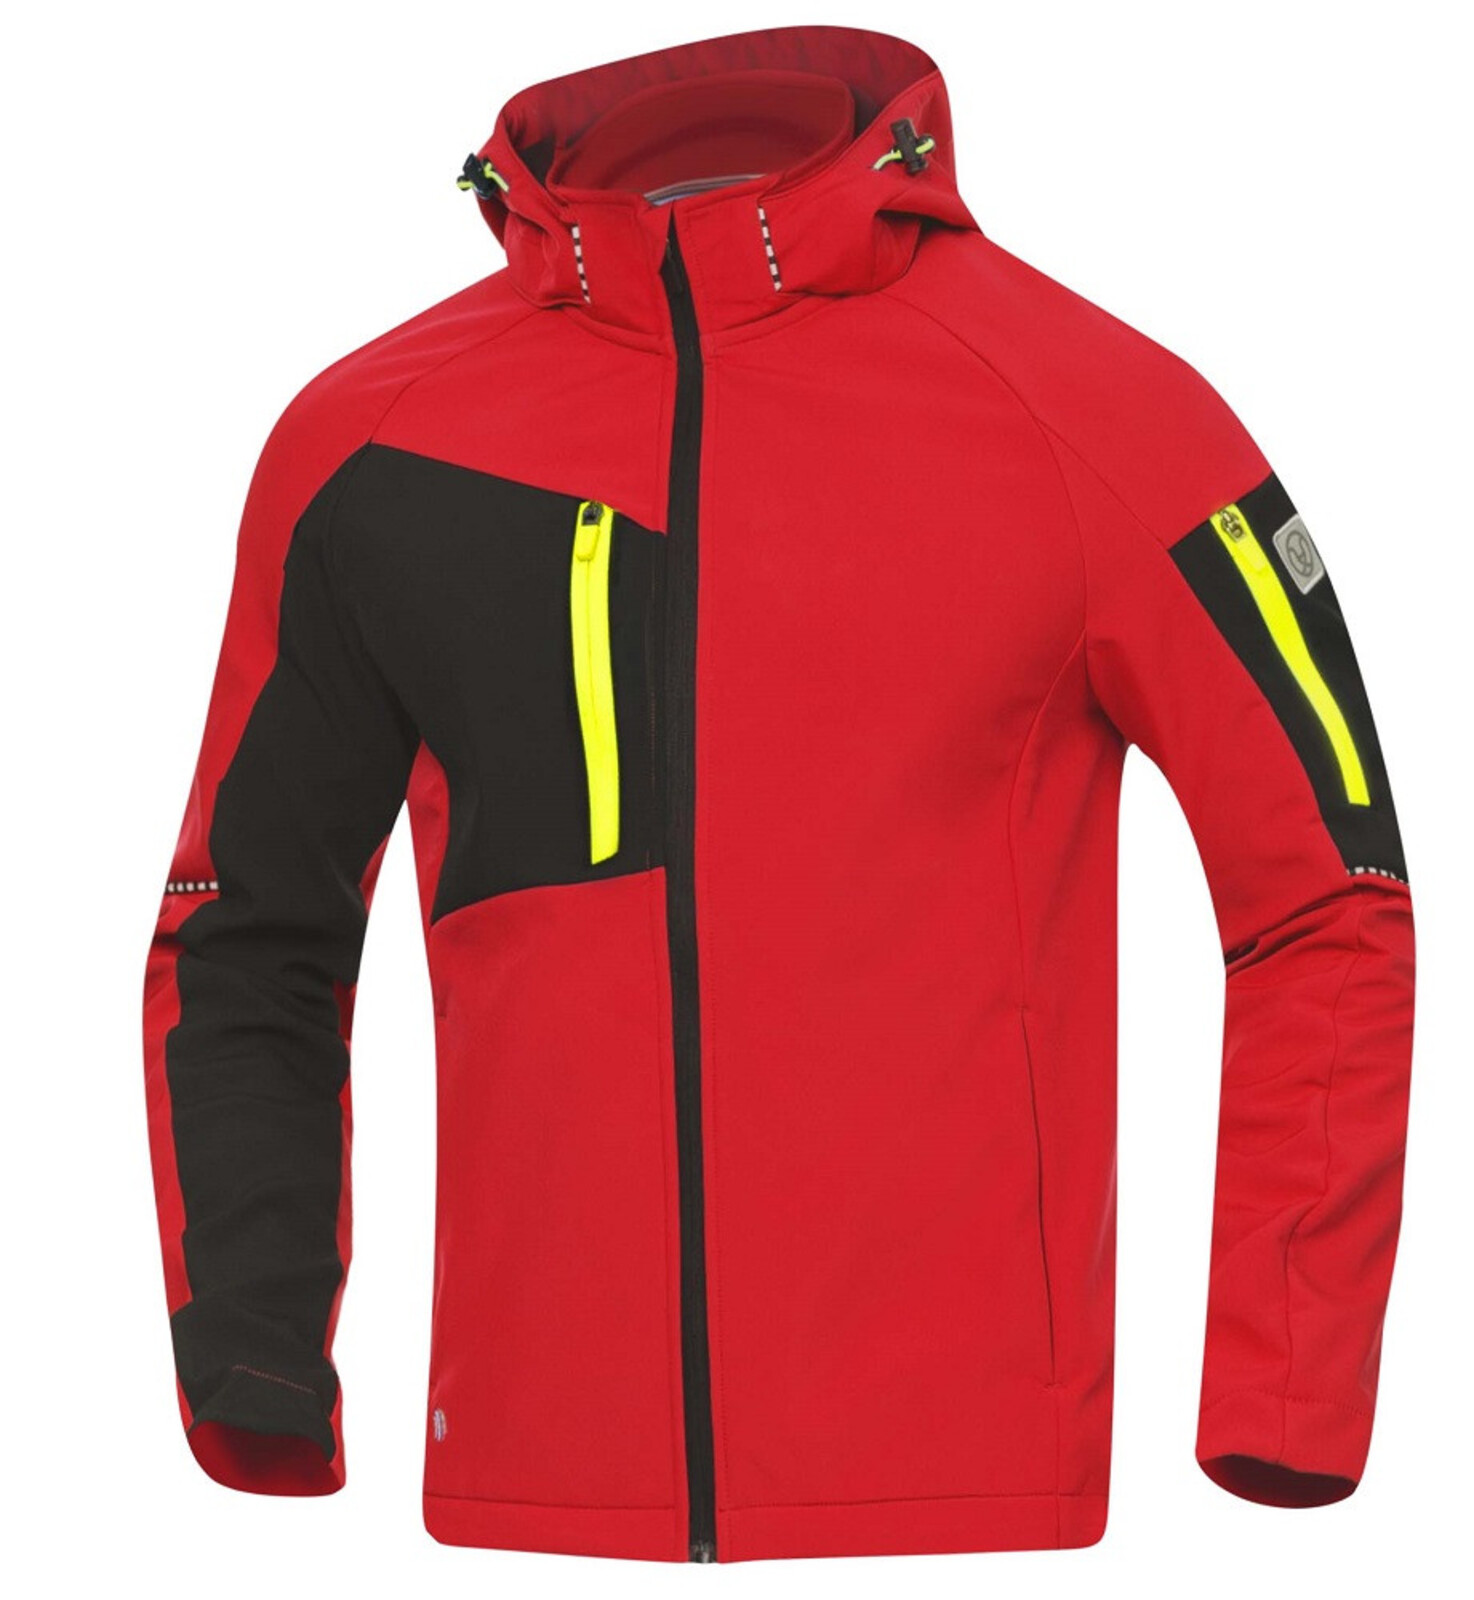 Pánska softshellová bunda Ardon Cityconic - veľkosť: XL, farba: červená/čierna